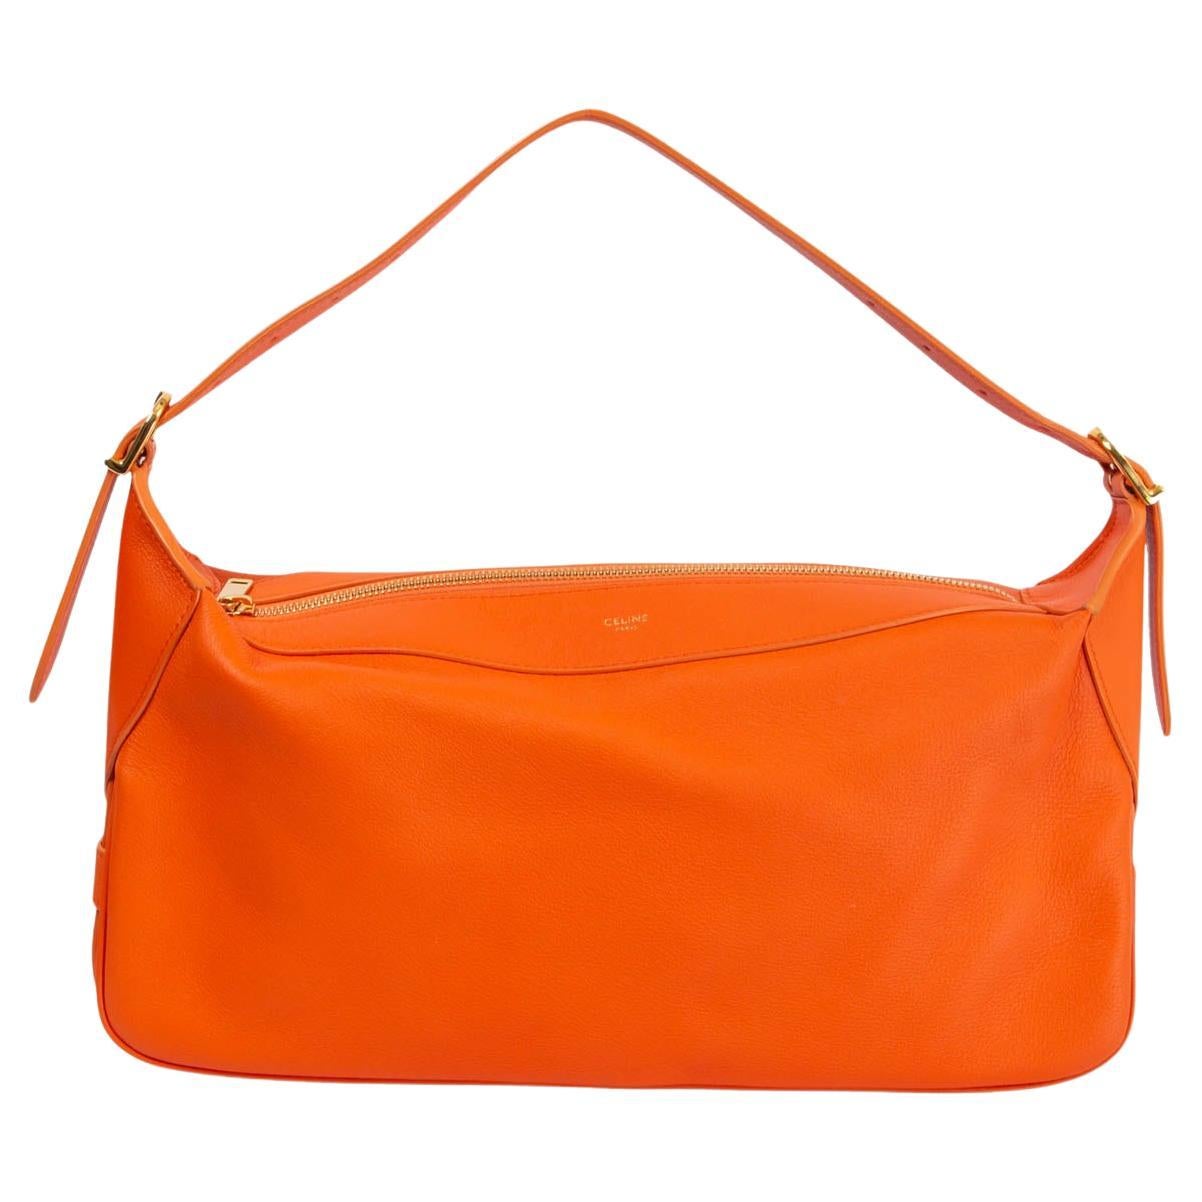 CELINE orange leather ROMY MEDIUM Shoulder Bag